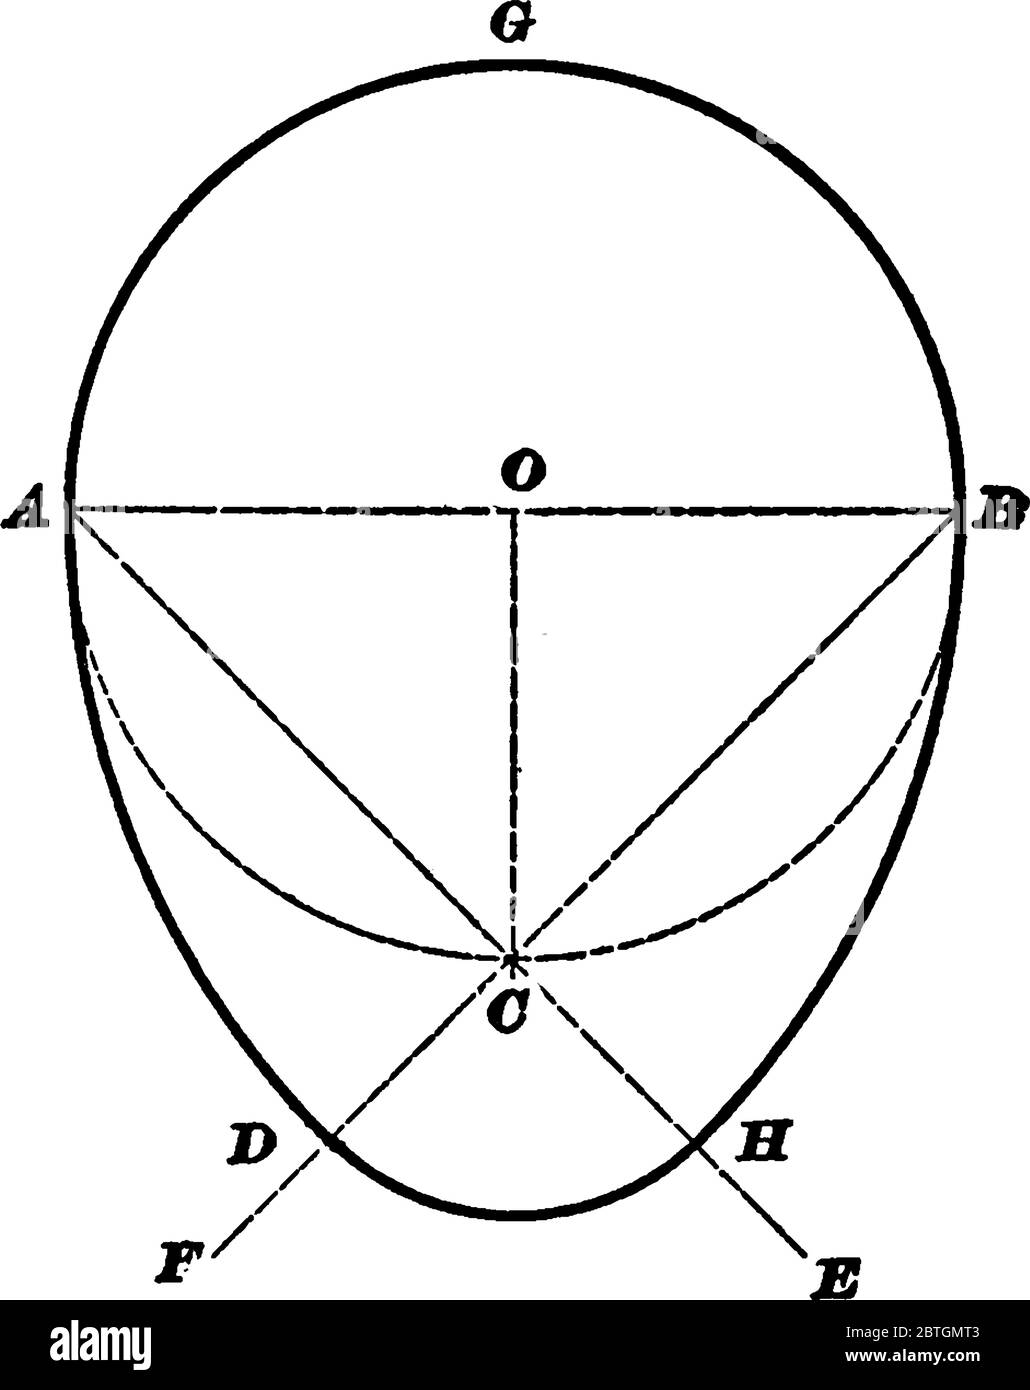 Un ovale ou ovoïde est une courbe qui ressemble à un oeuf ou une ellipse, un dessin de ligne vintage ou une illustration de gravure. Illustration de Vecteur